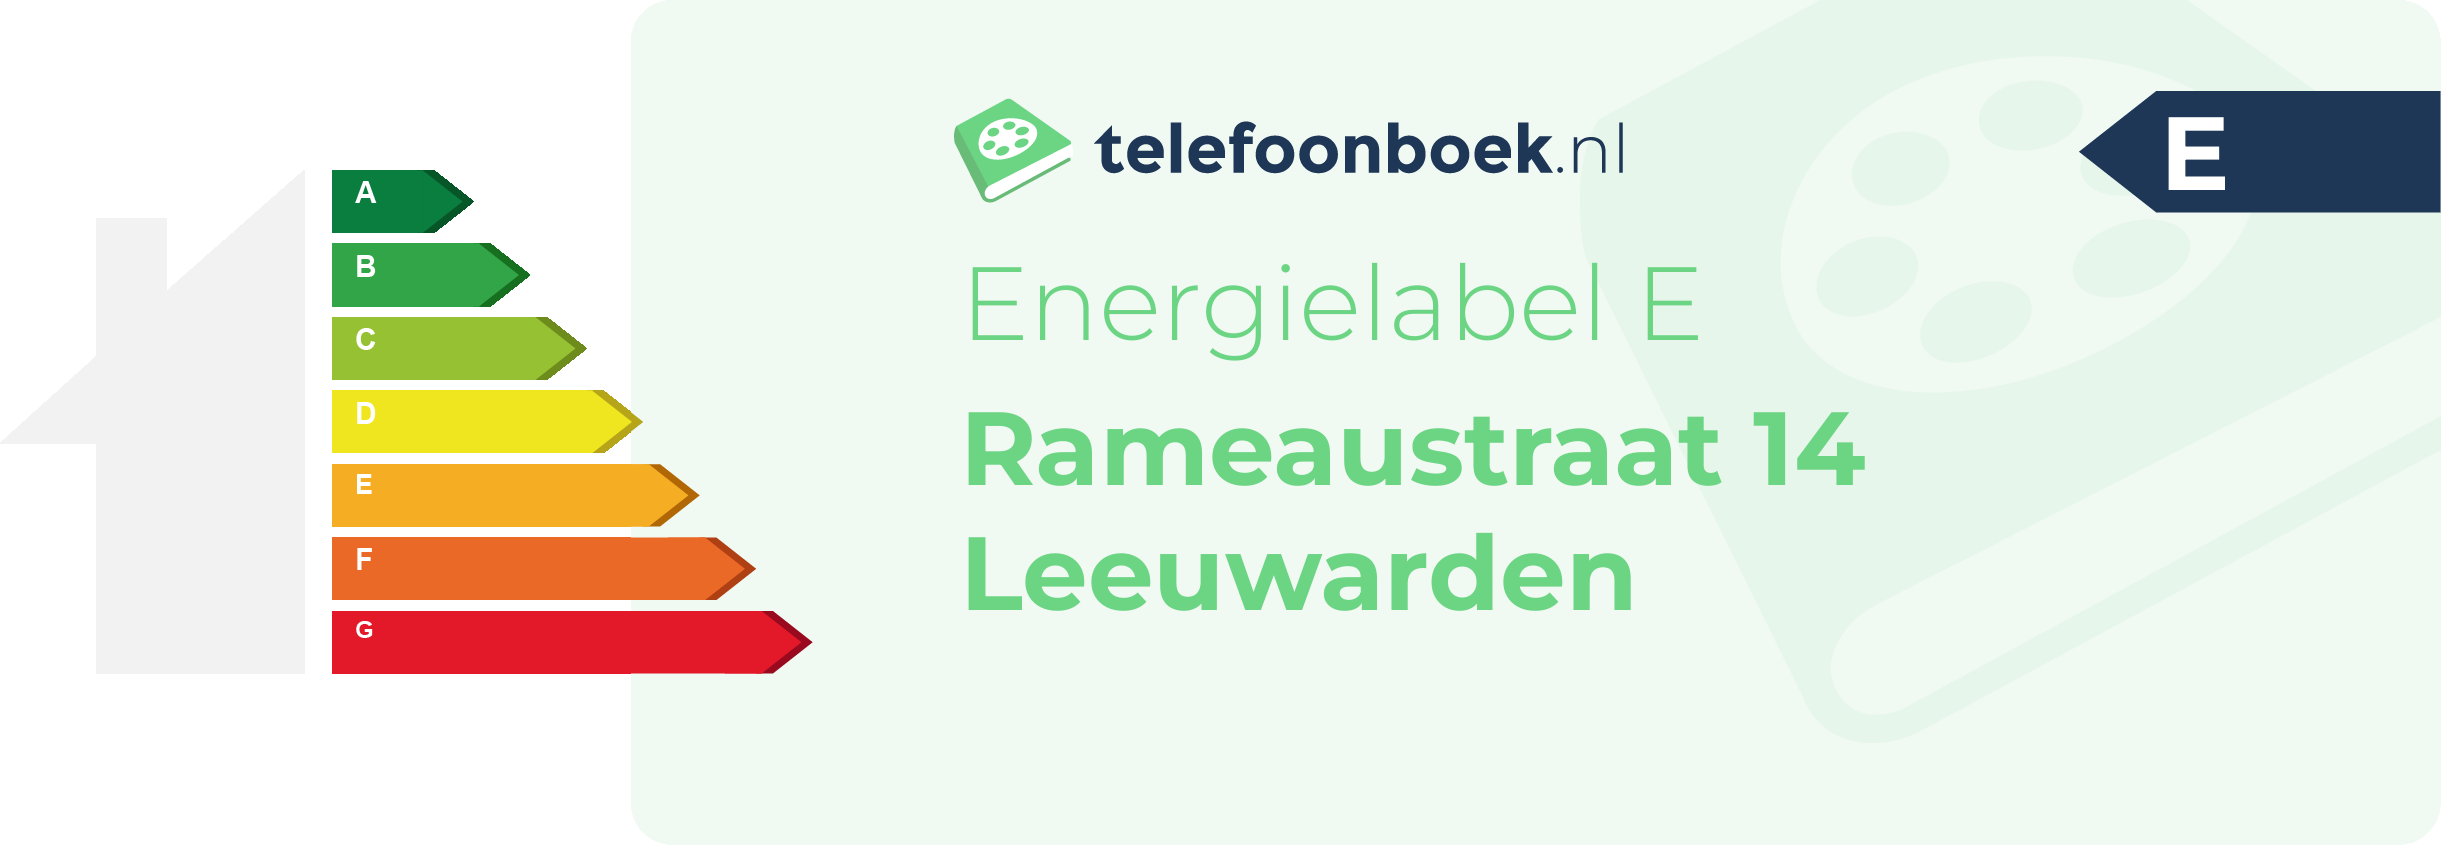 Energielabel Rameaustraat 14 Leeuwarden